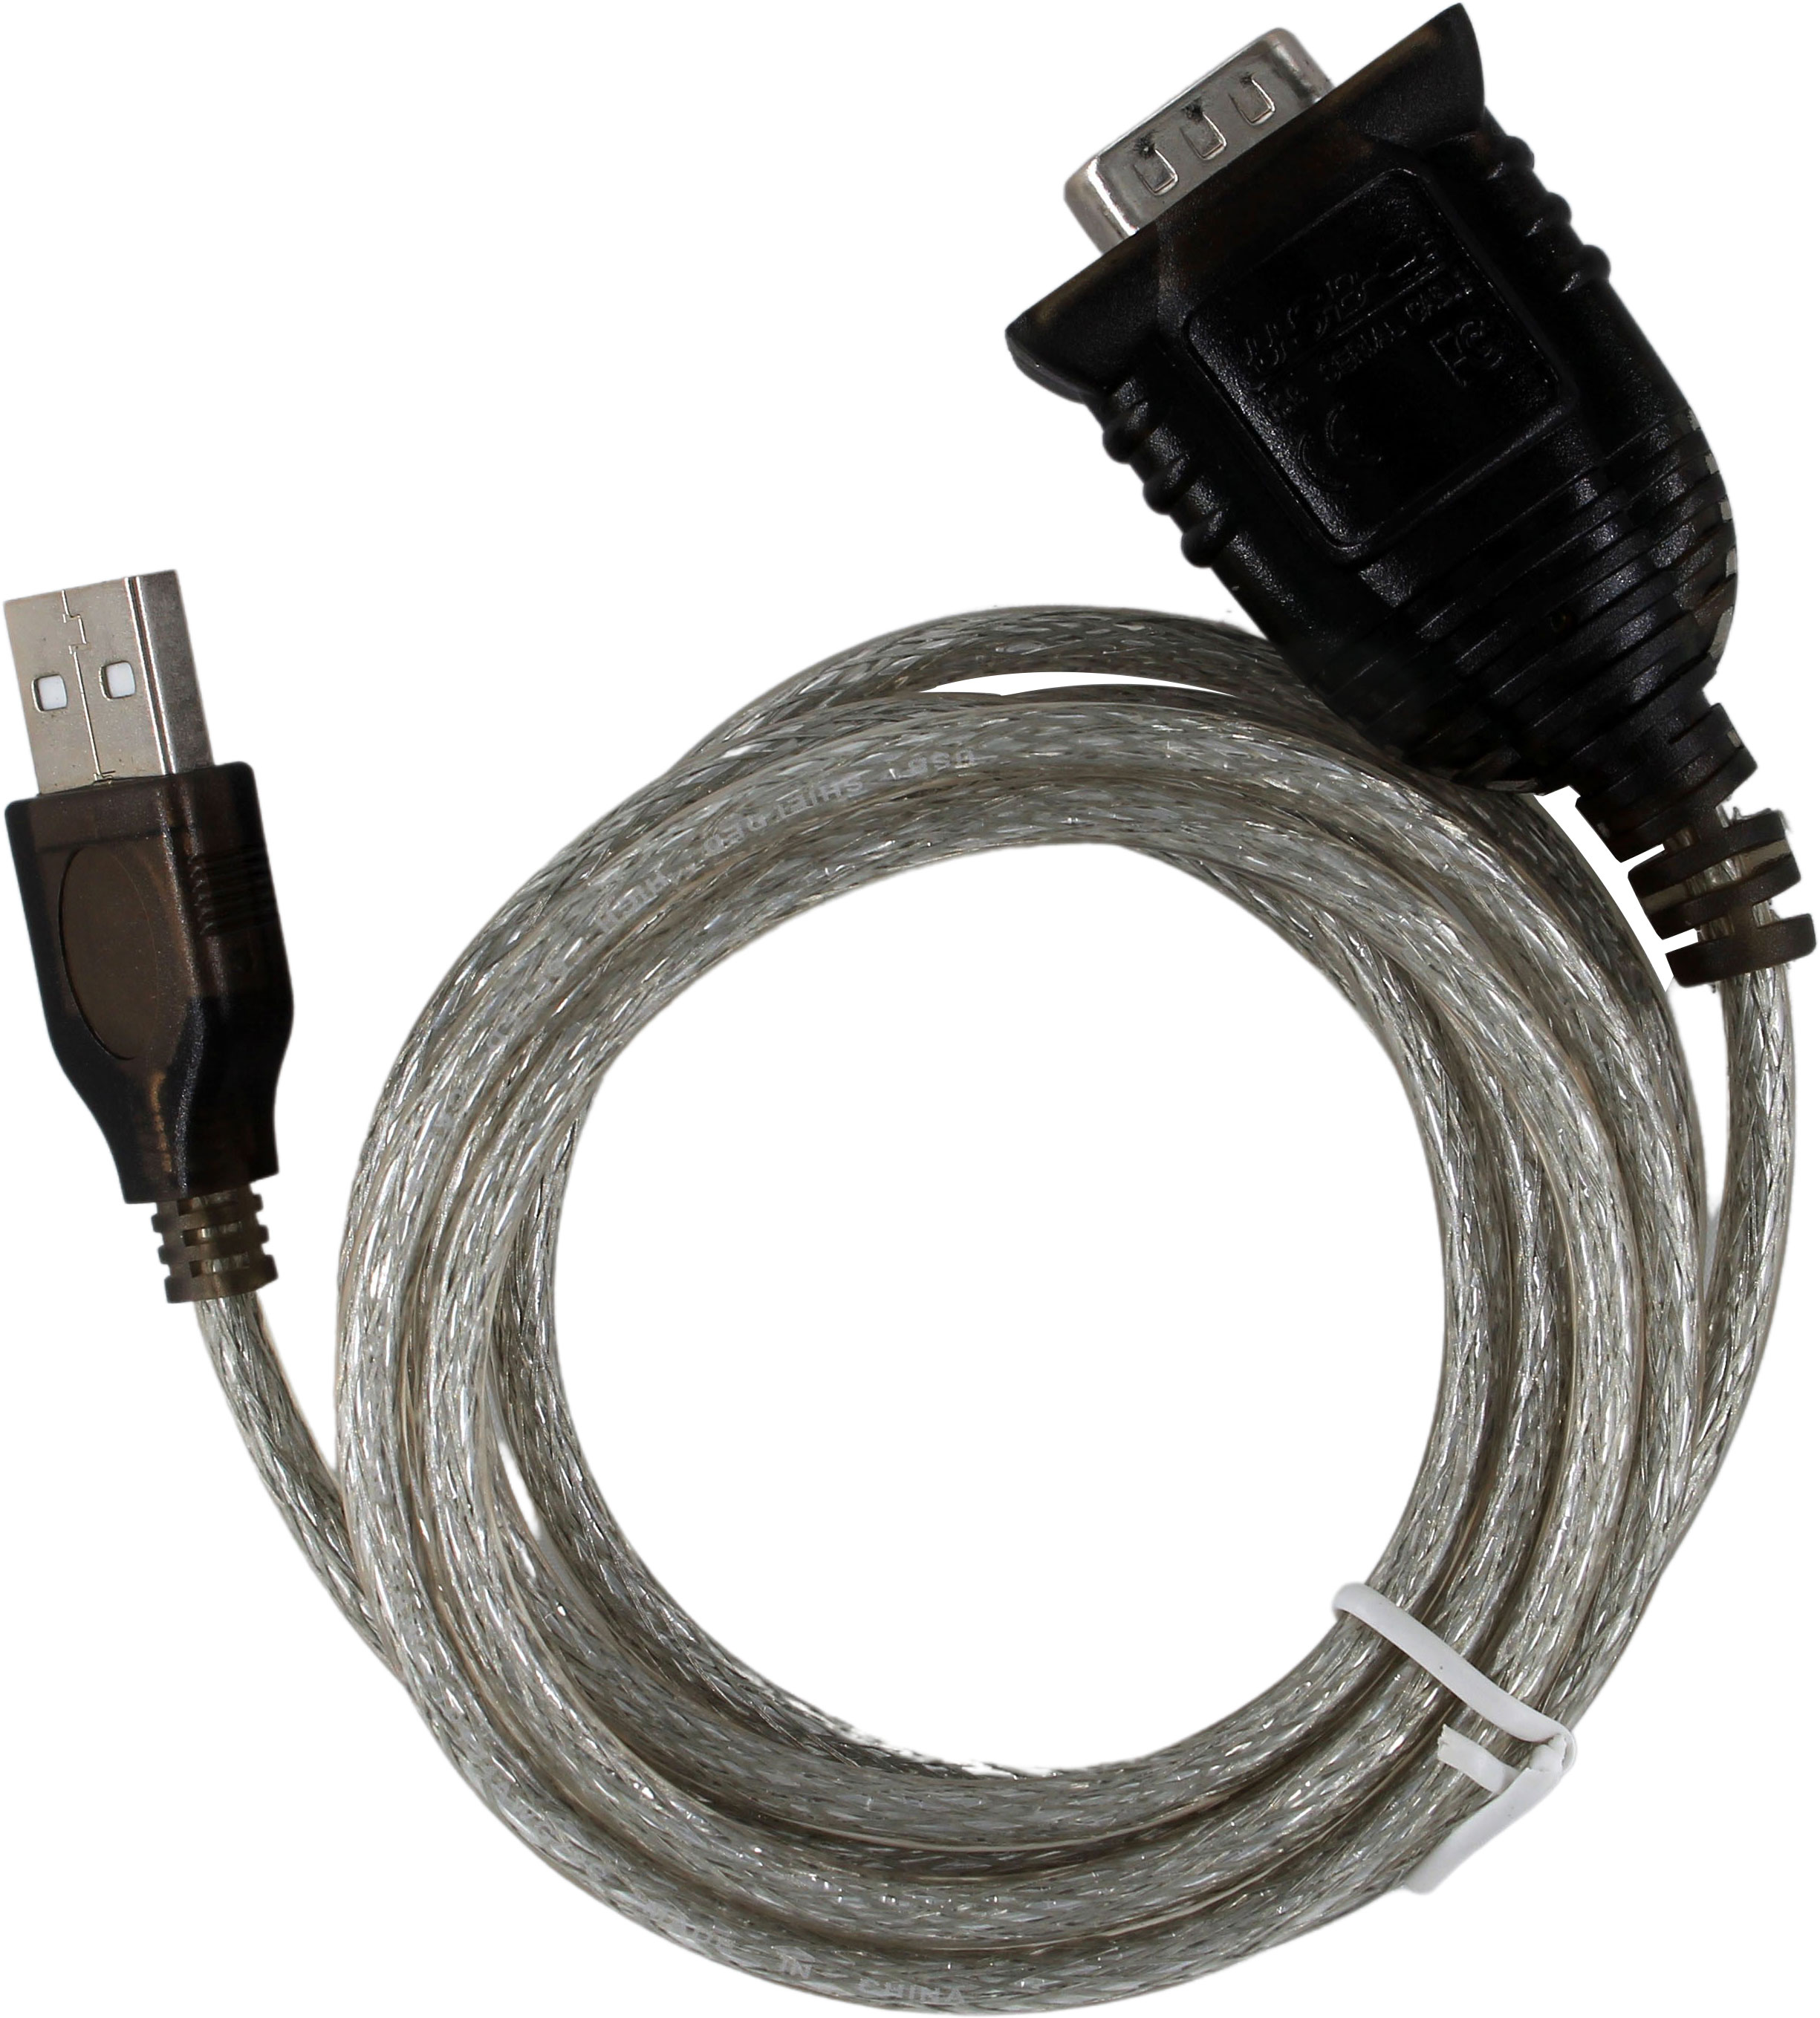 USB kabel til prog. enhet.